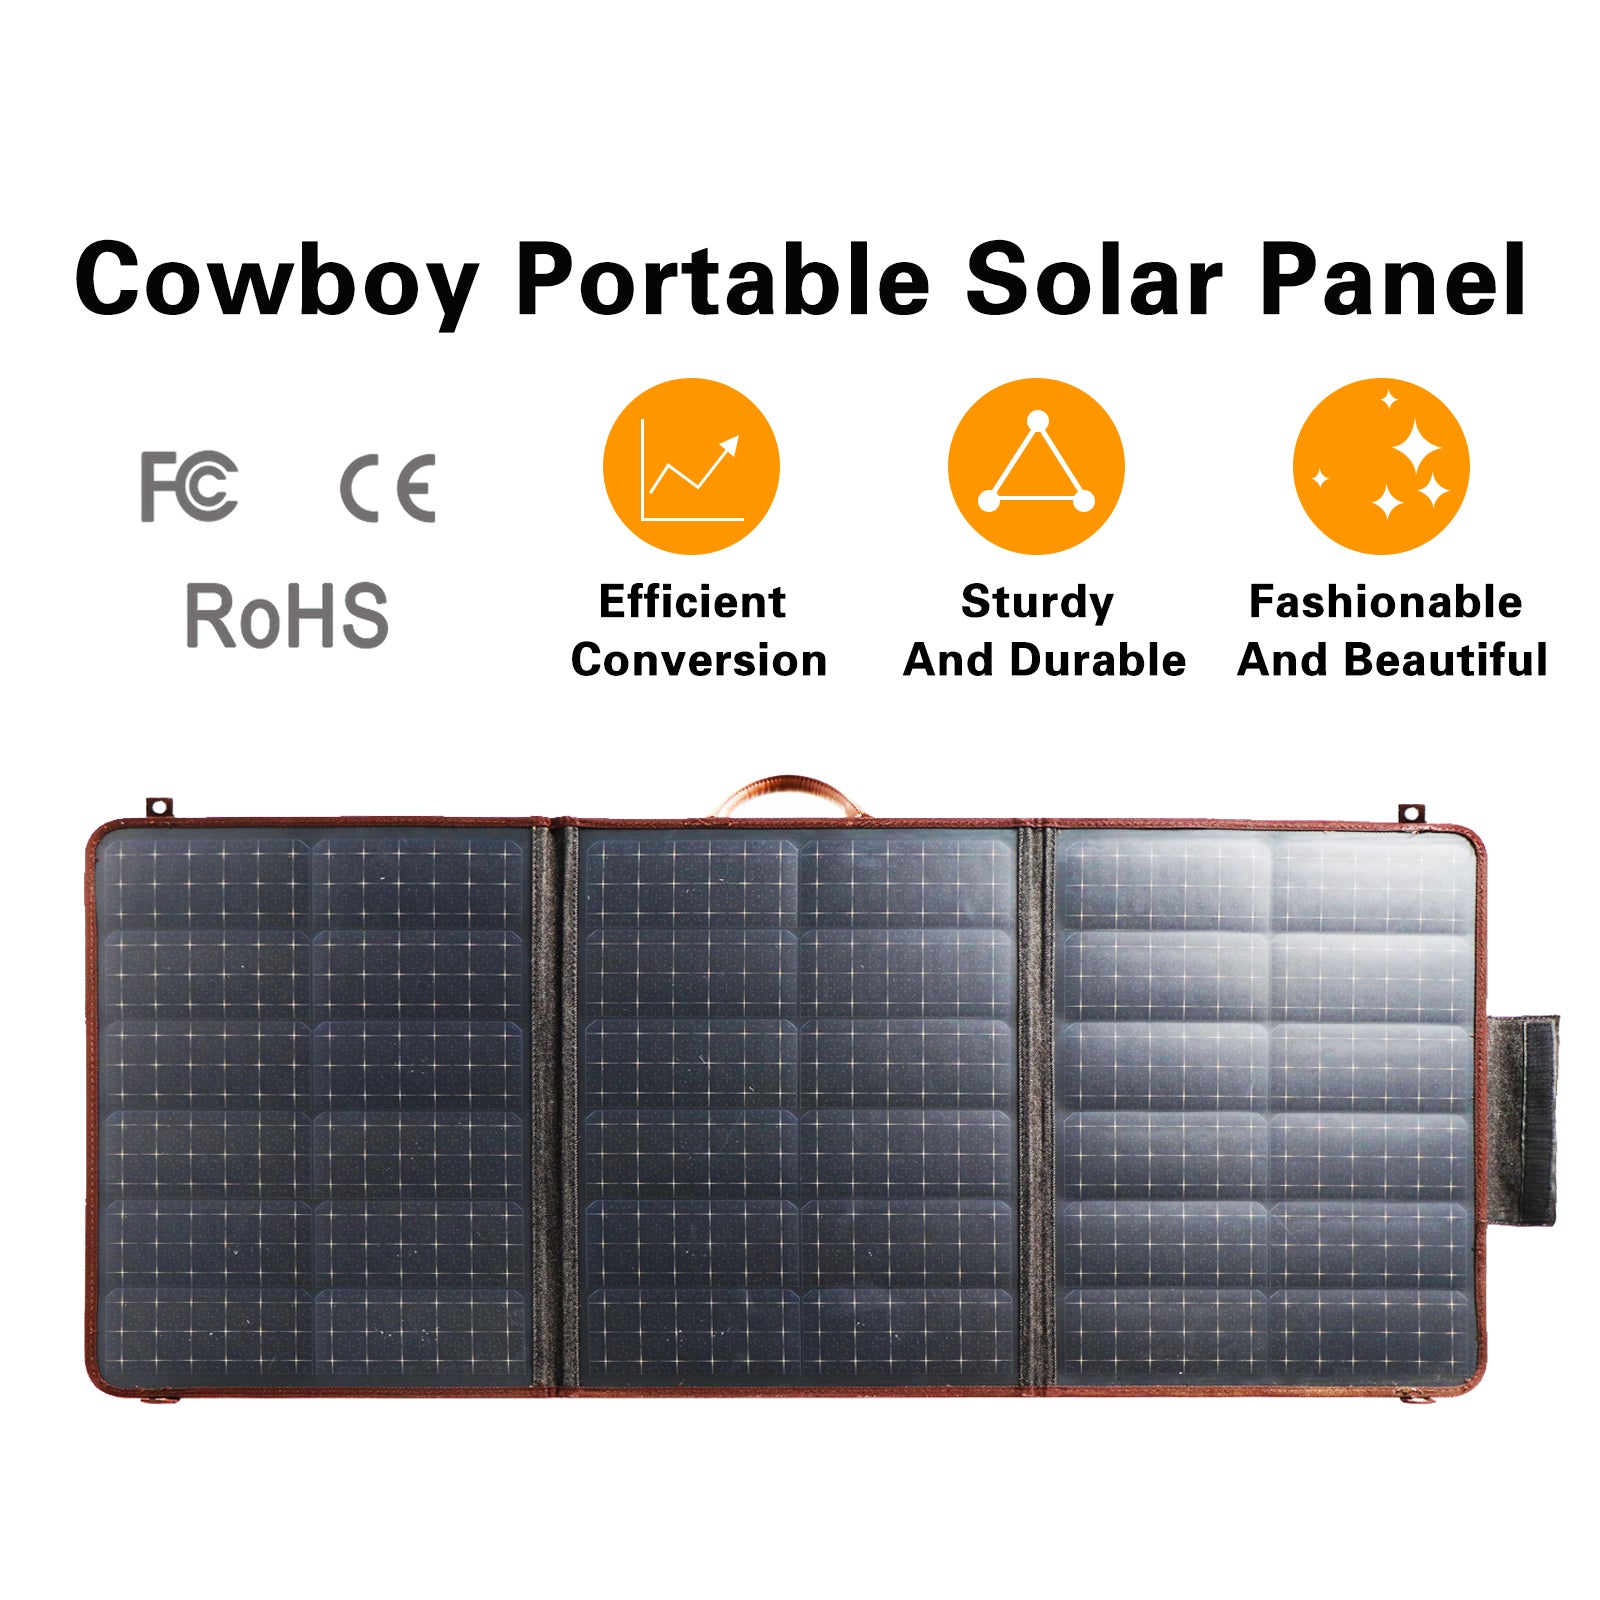 Pannello solare portatile Shawllar 100W Cowboy